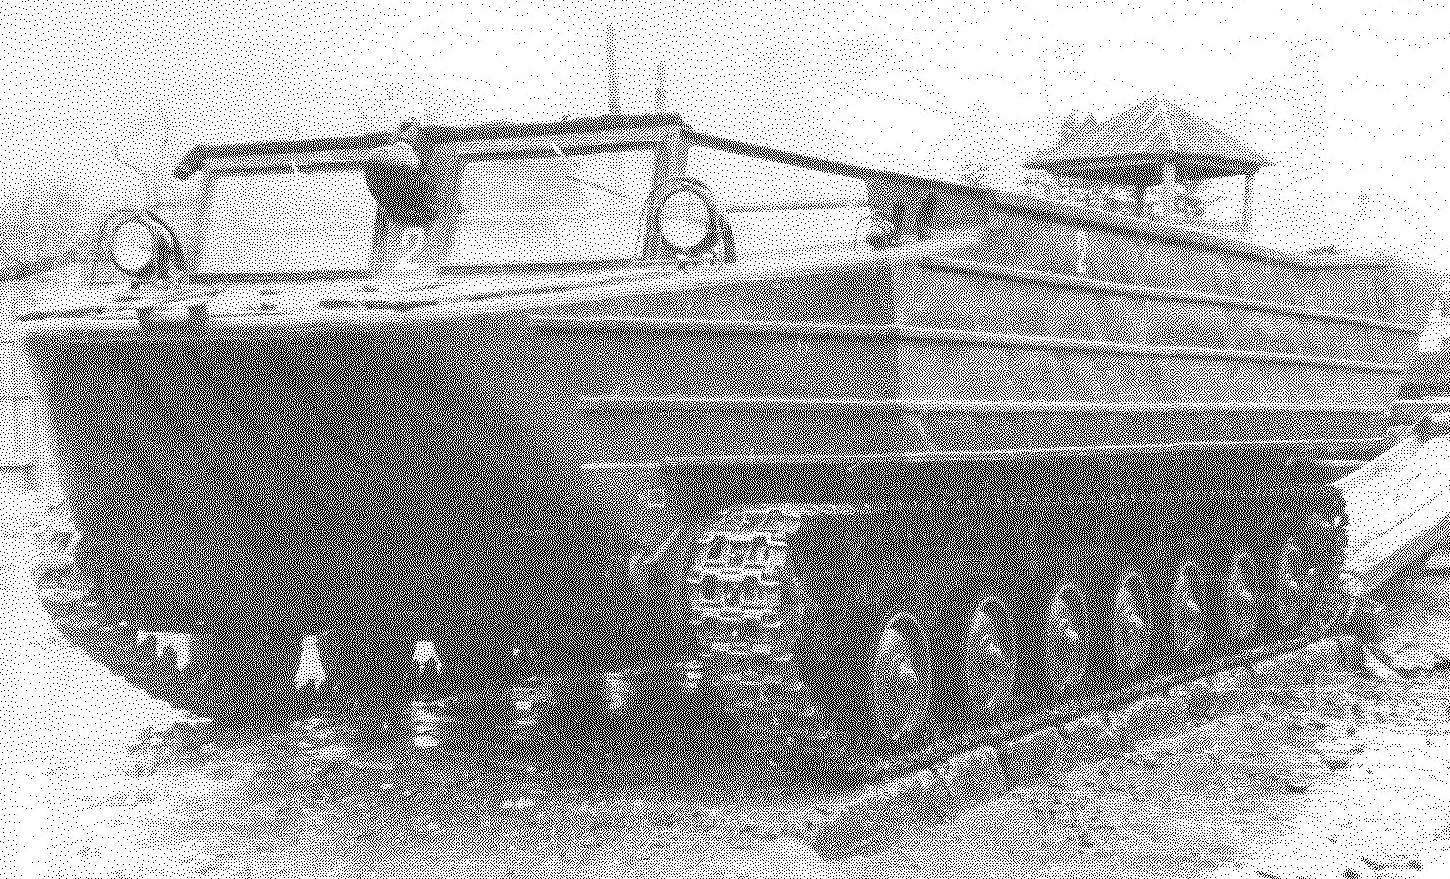 Гусеничный плавающий транспортер К-61